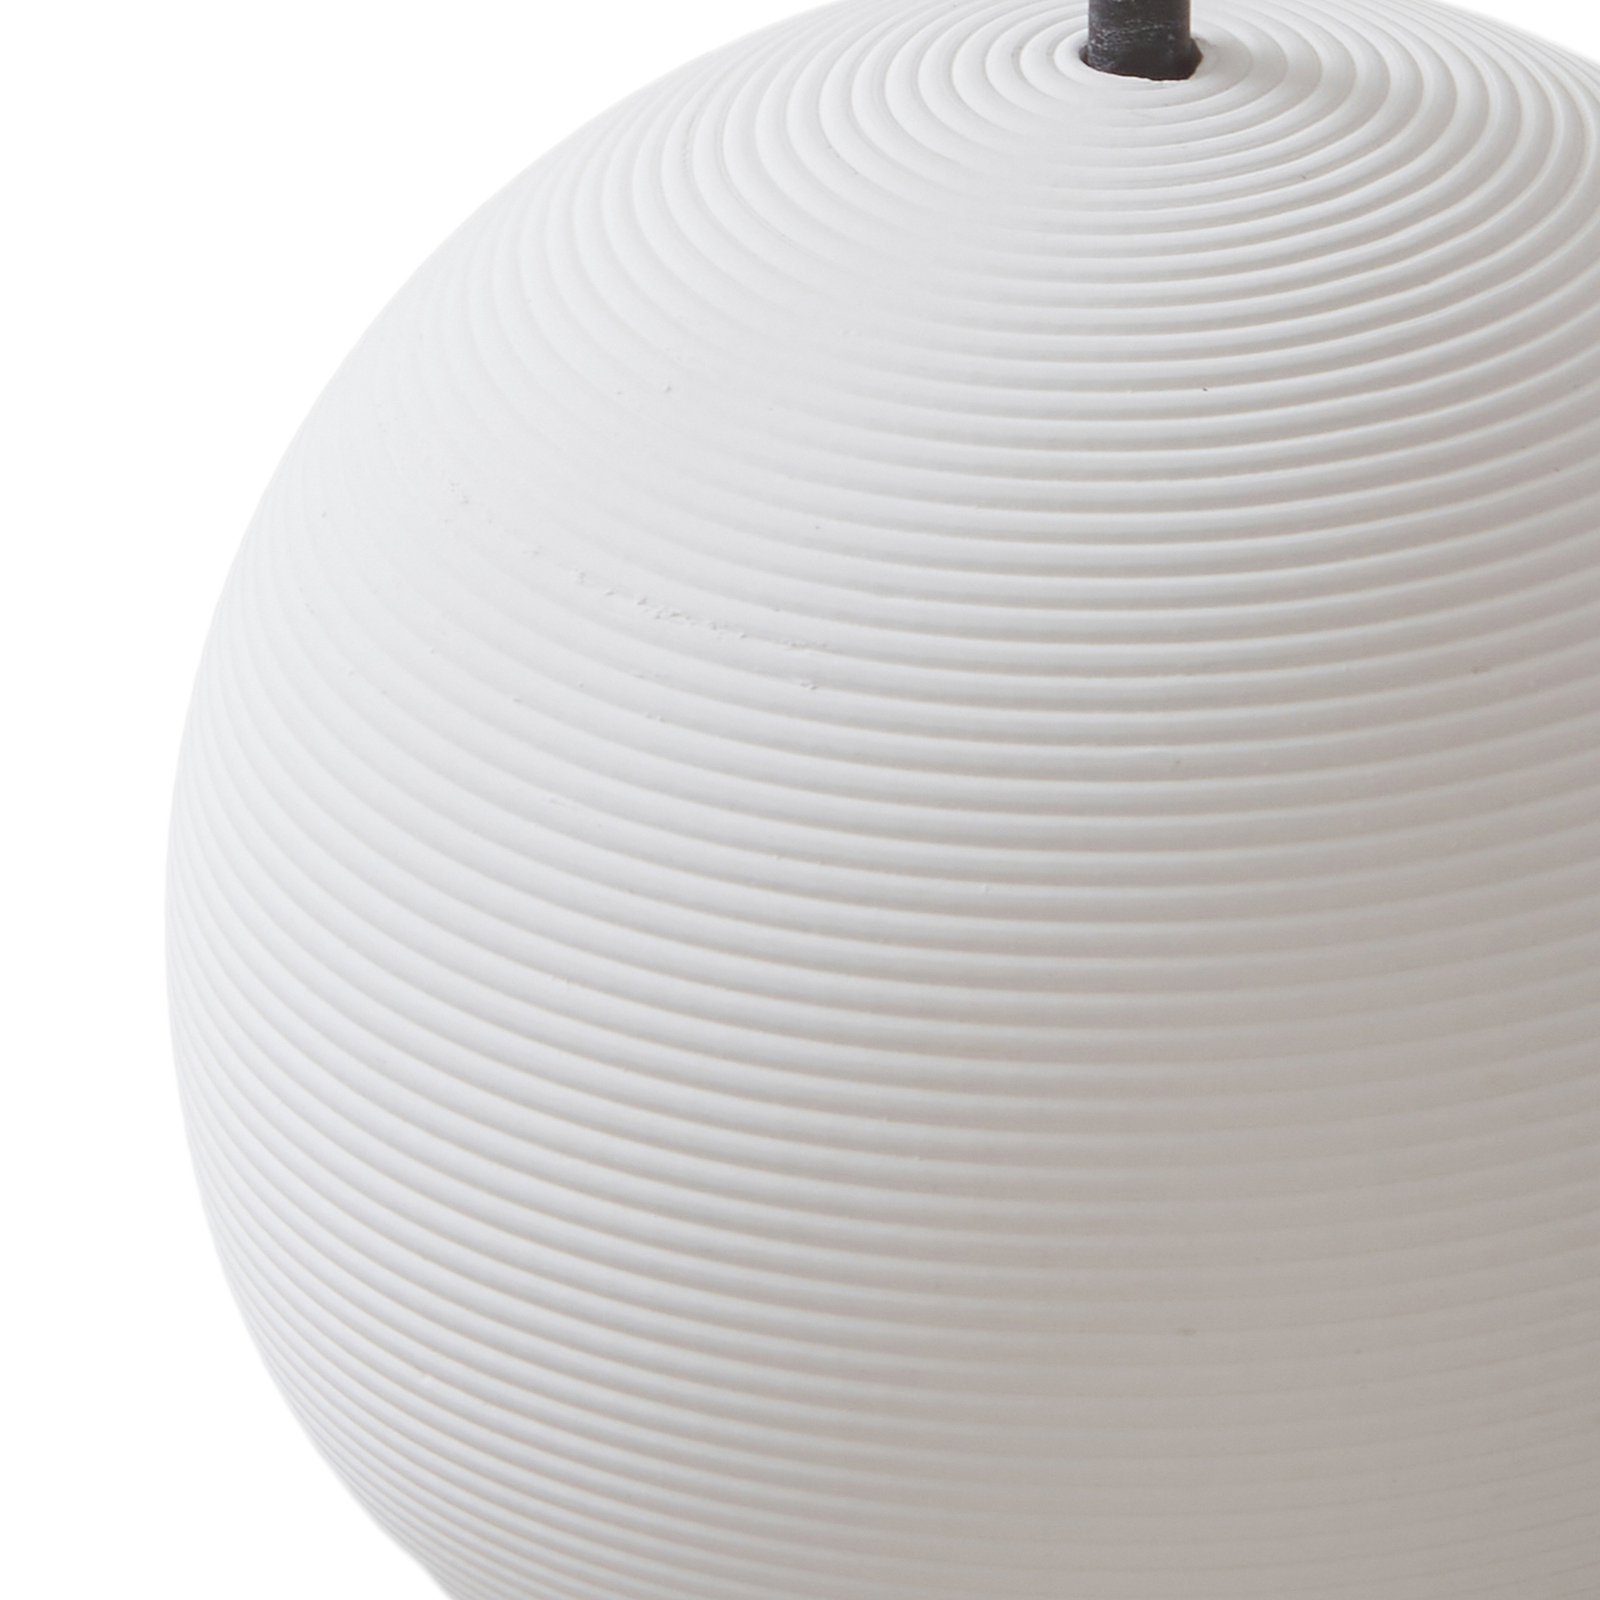 Lucande LED pendant light Darkorin, white, round, plaster, Ø 12 cm